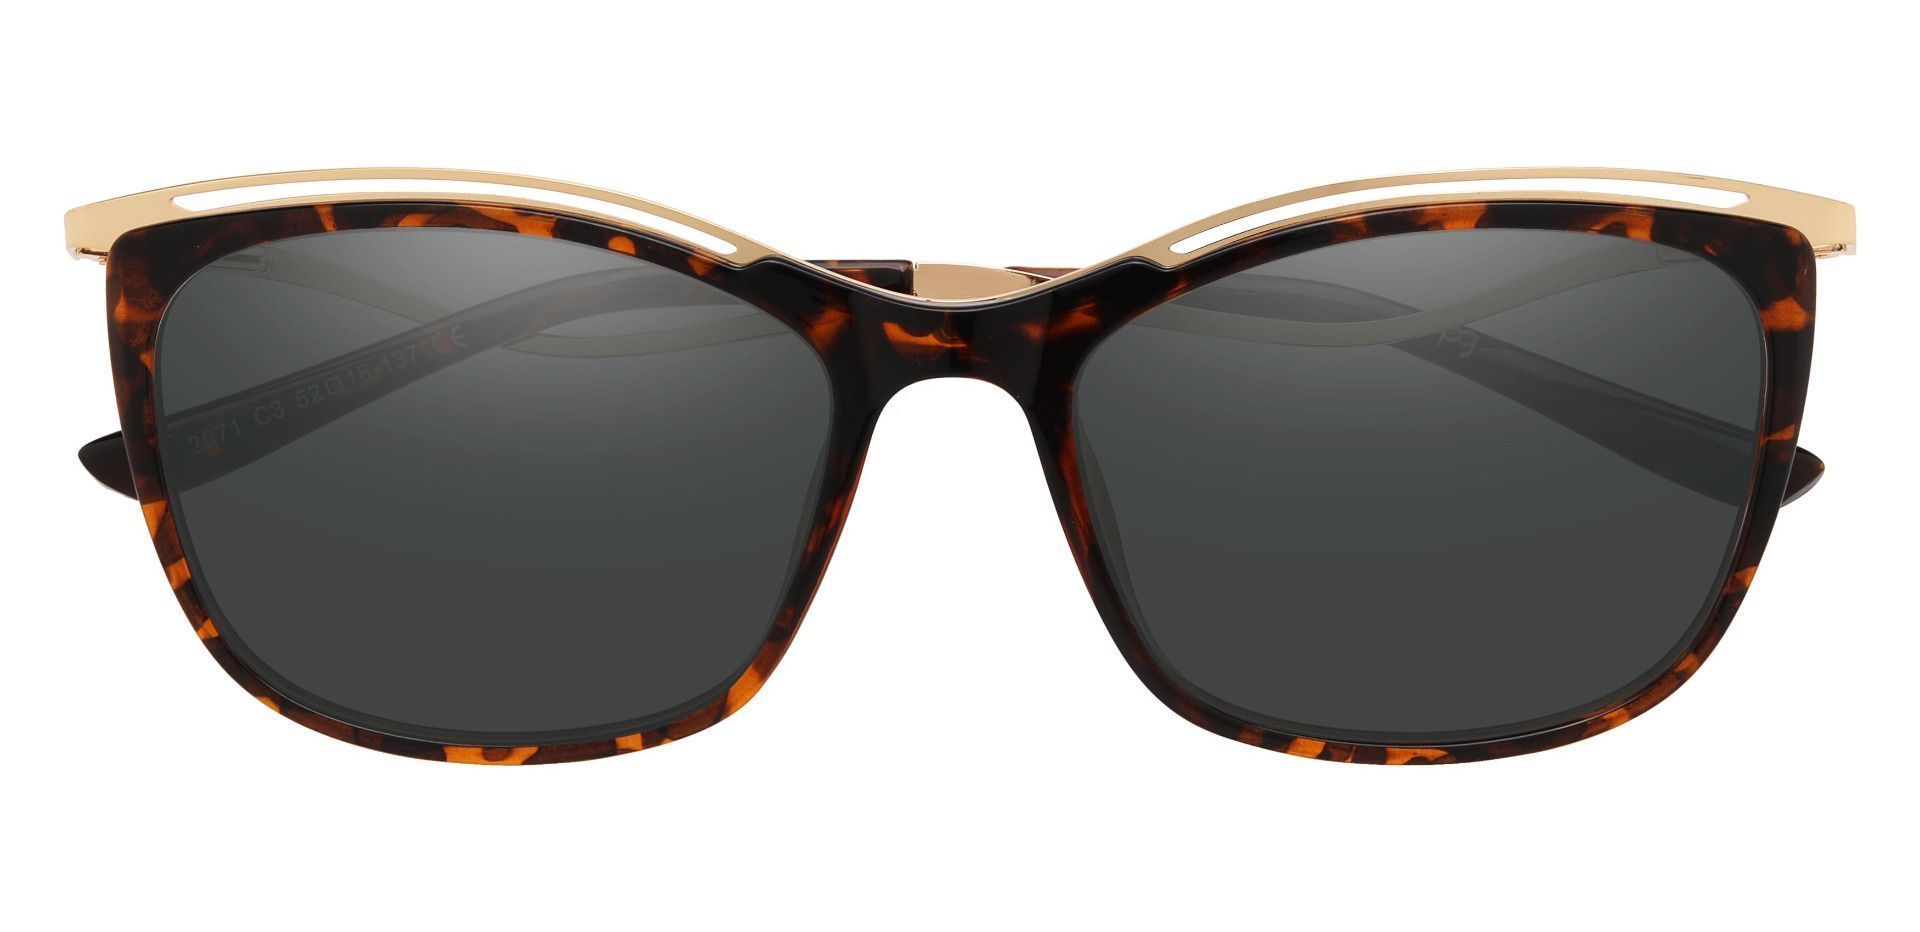 Enola Cat Eye Reading Sunglasses - Tortoise Frame With Gray Lenses